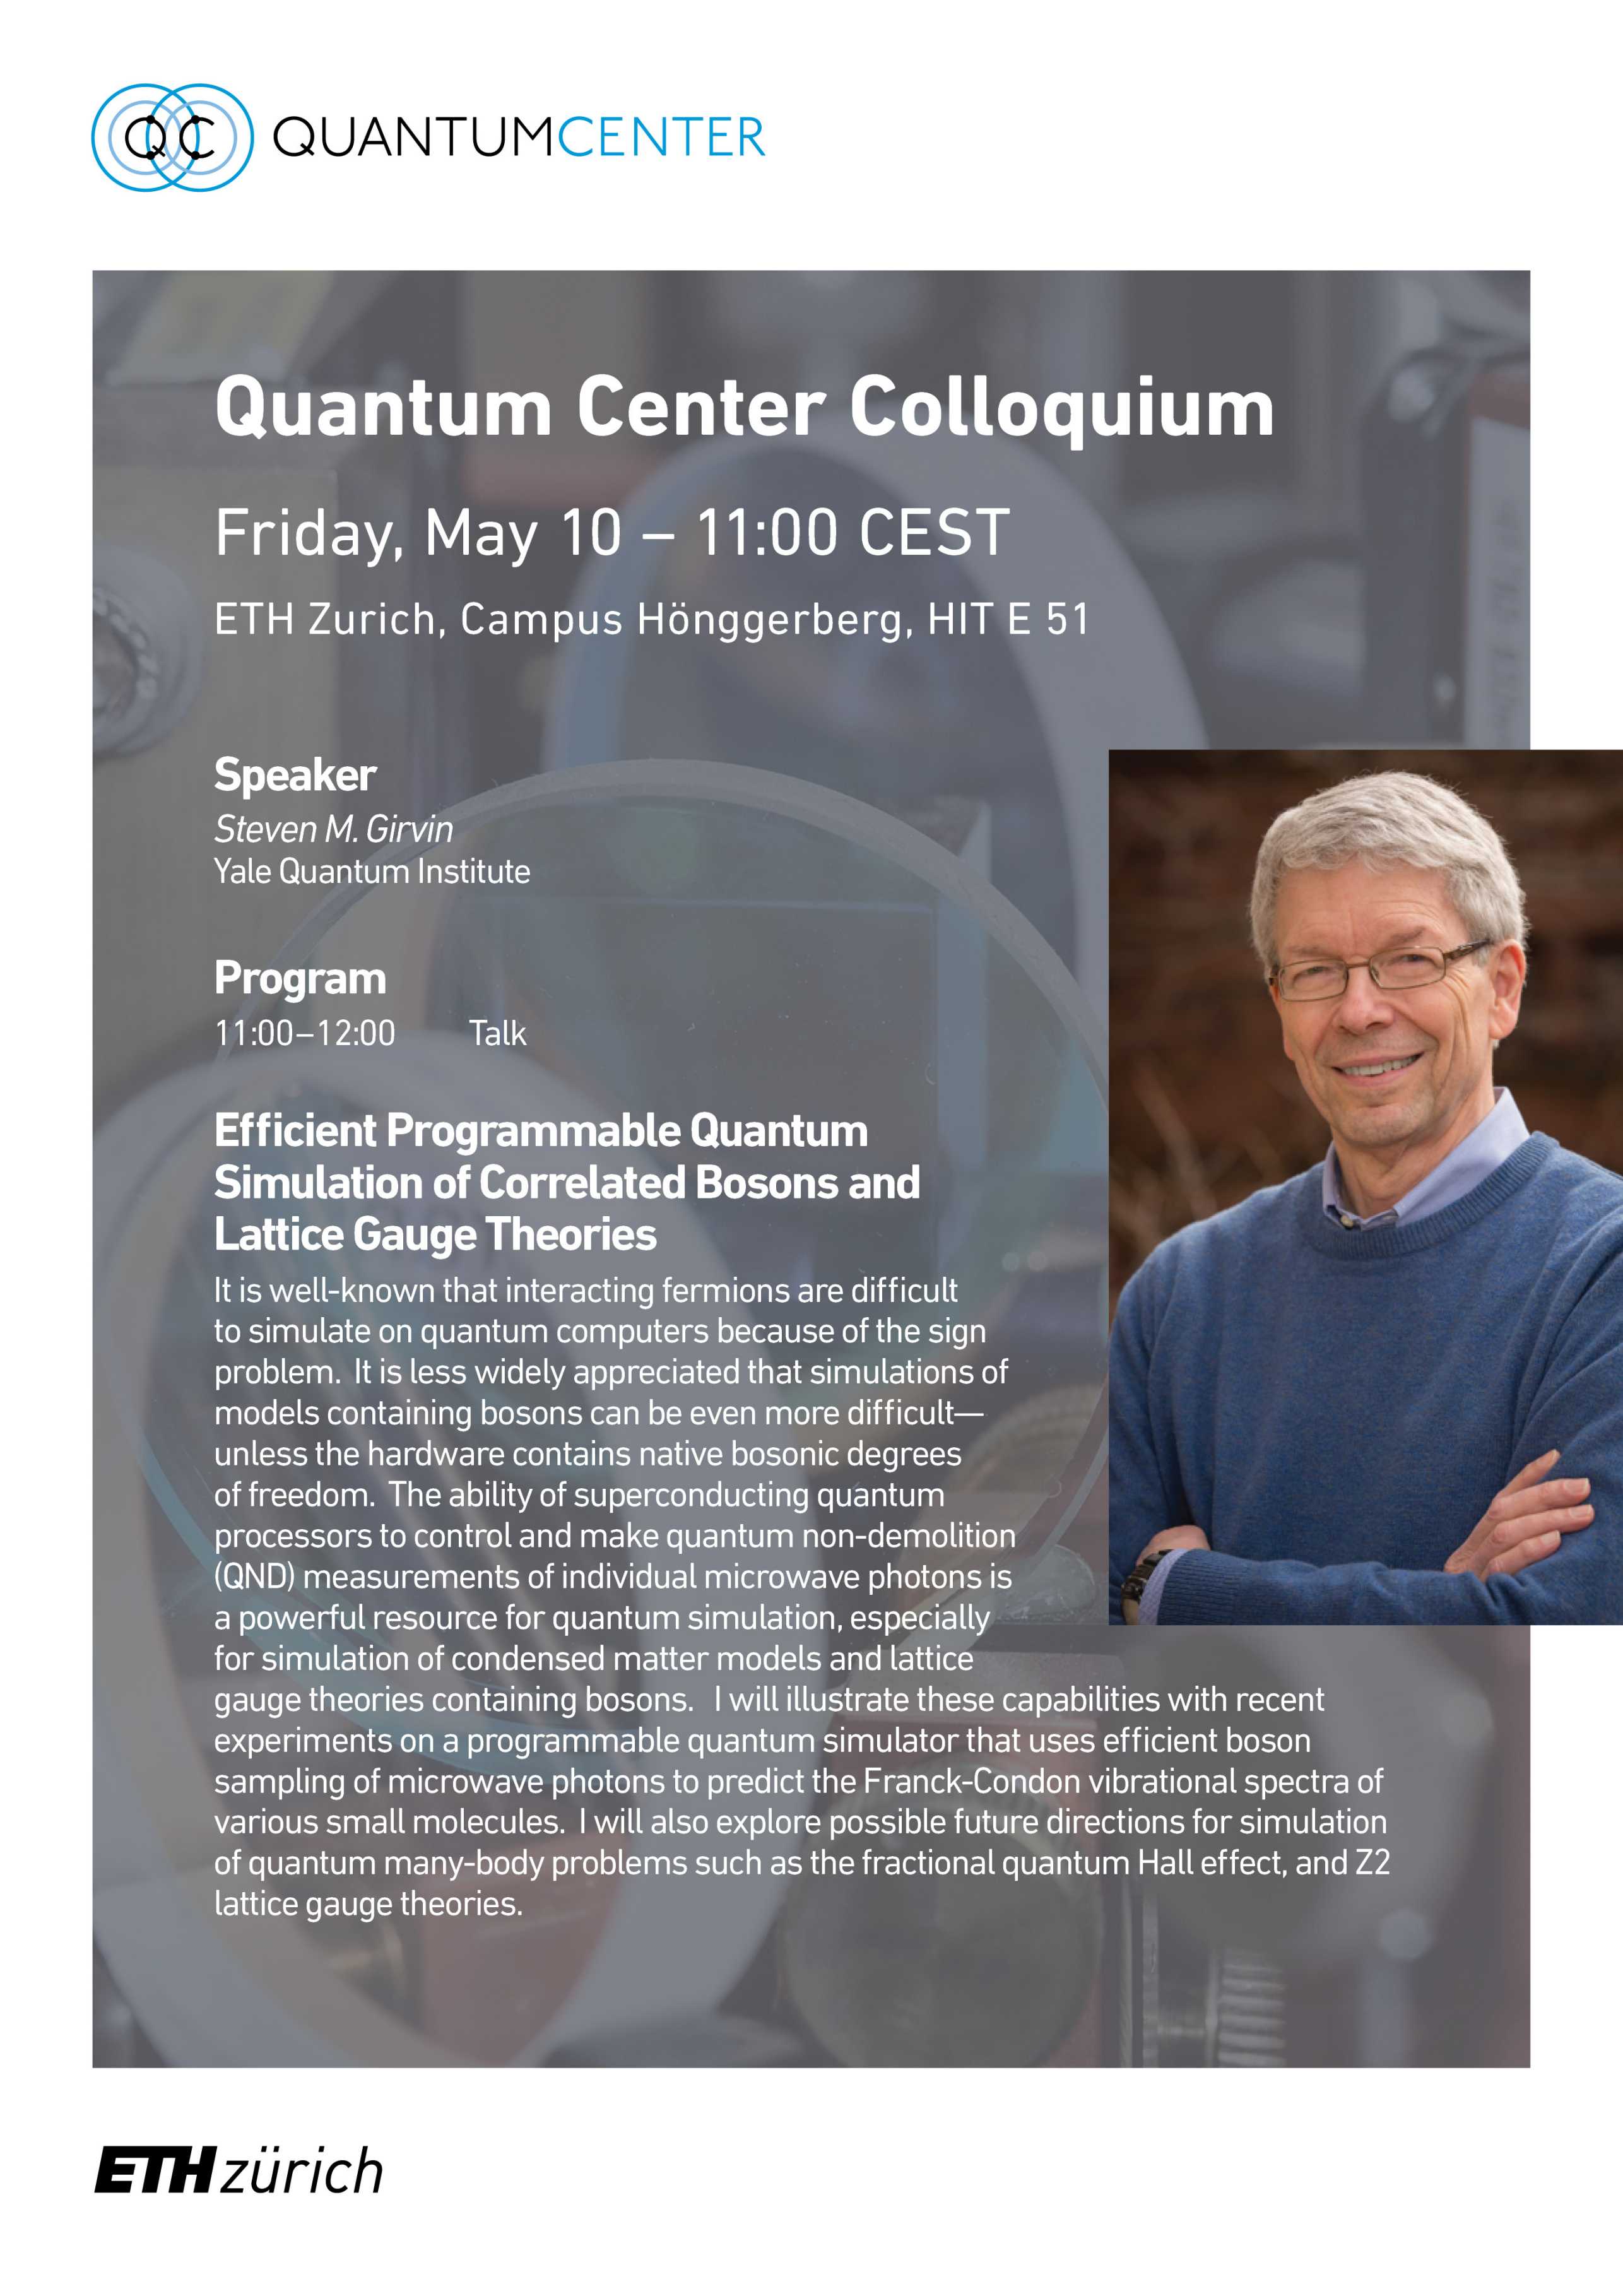 Quantum Center Colloquium with Steven M. Girvin